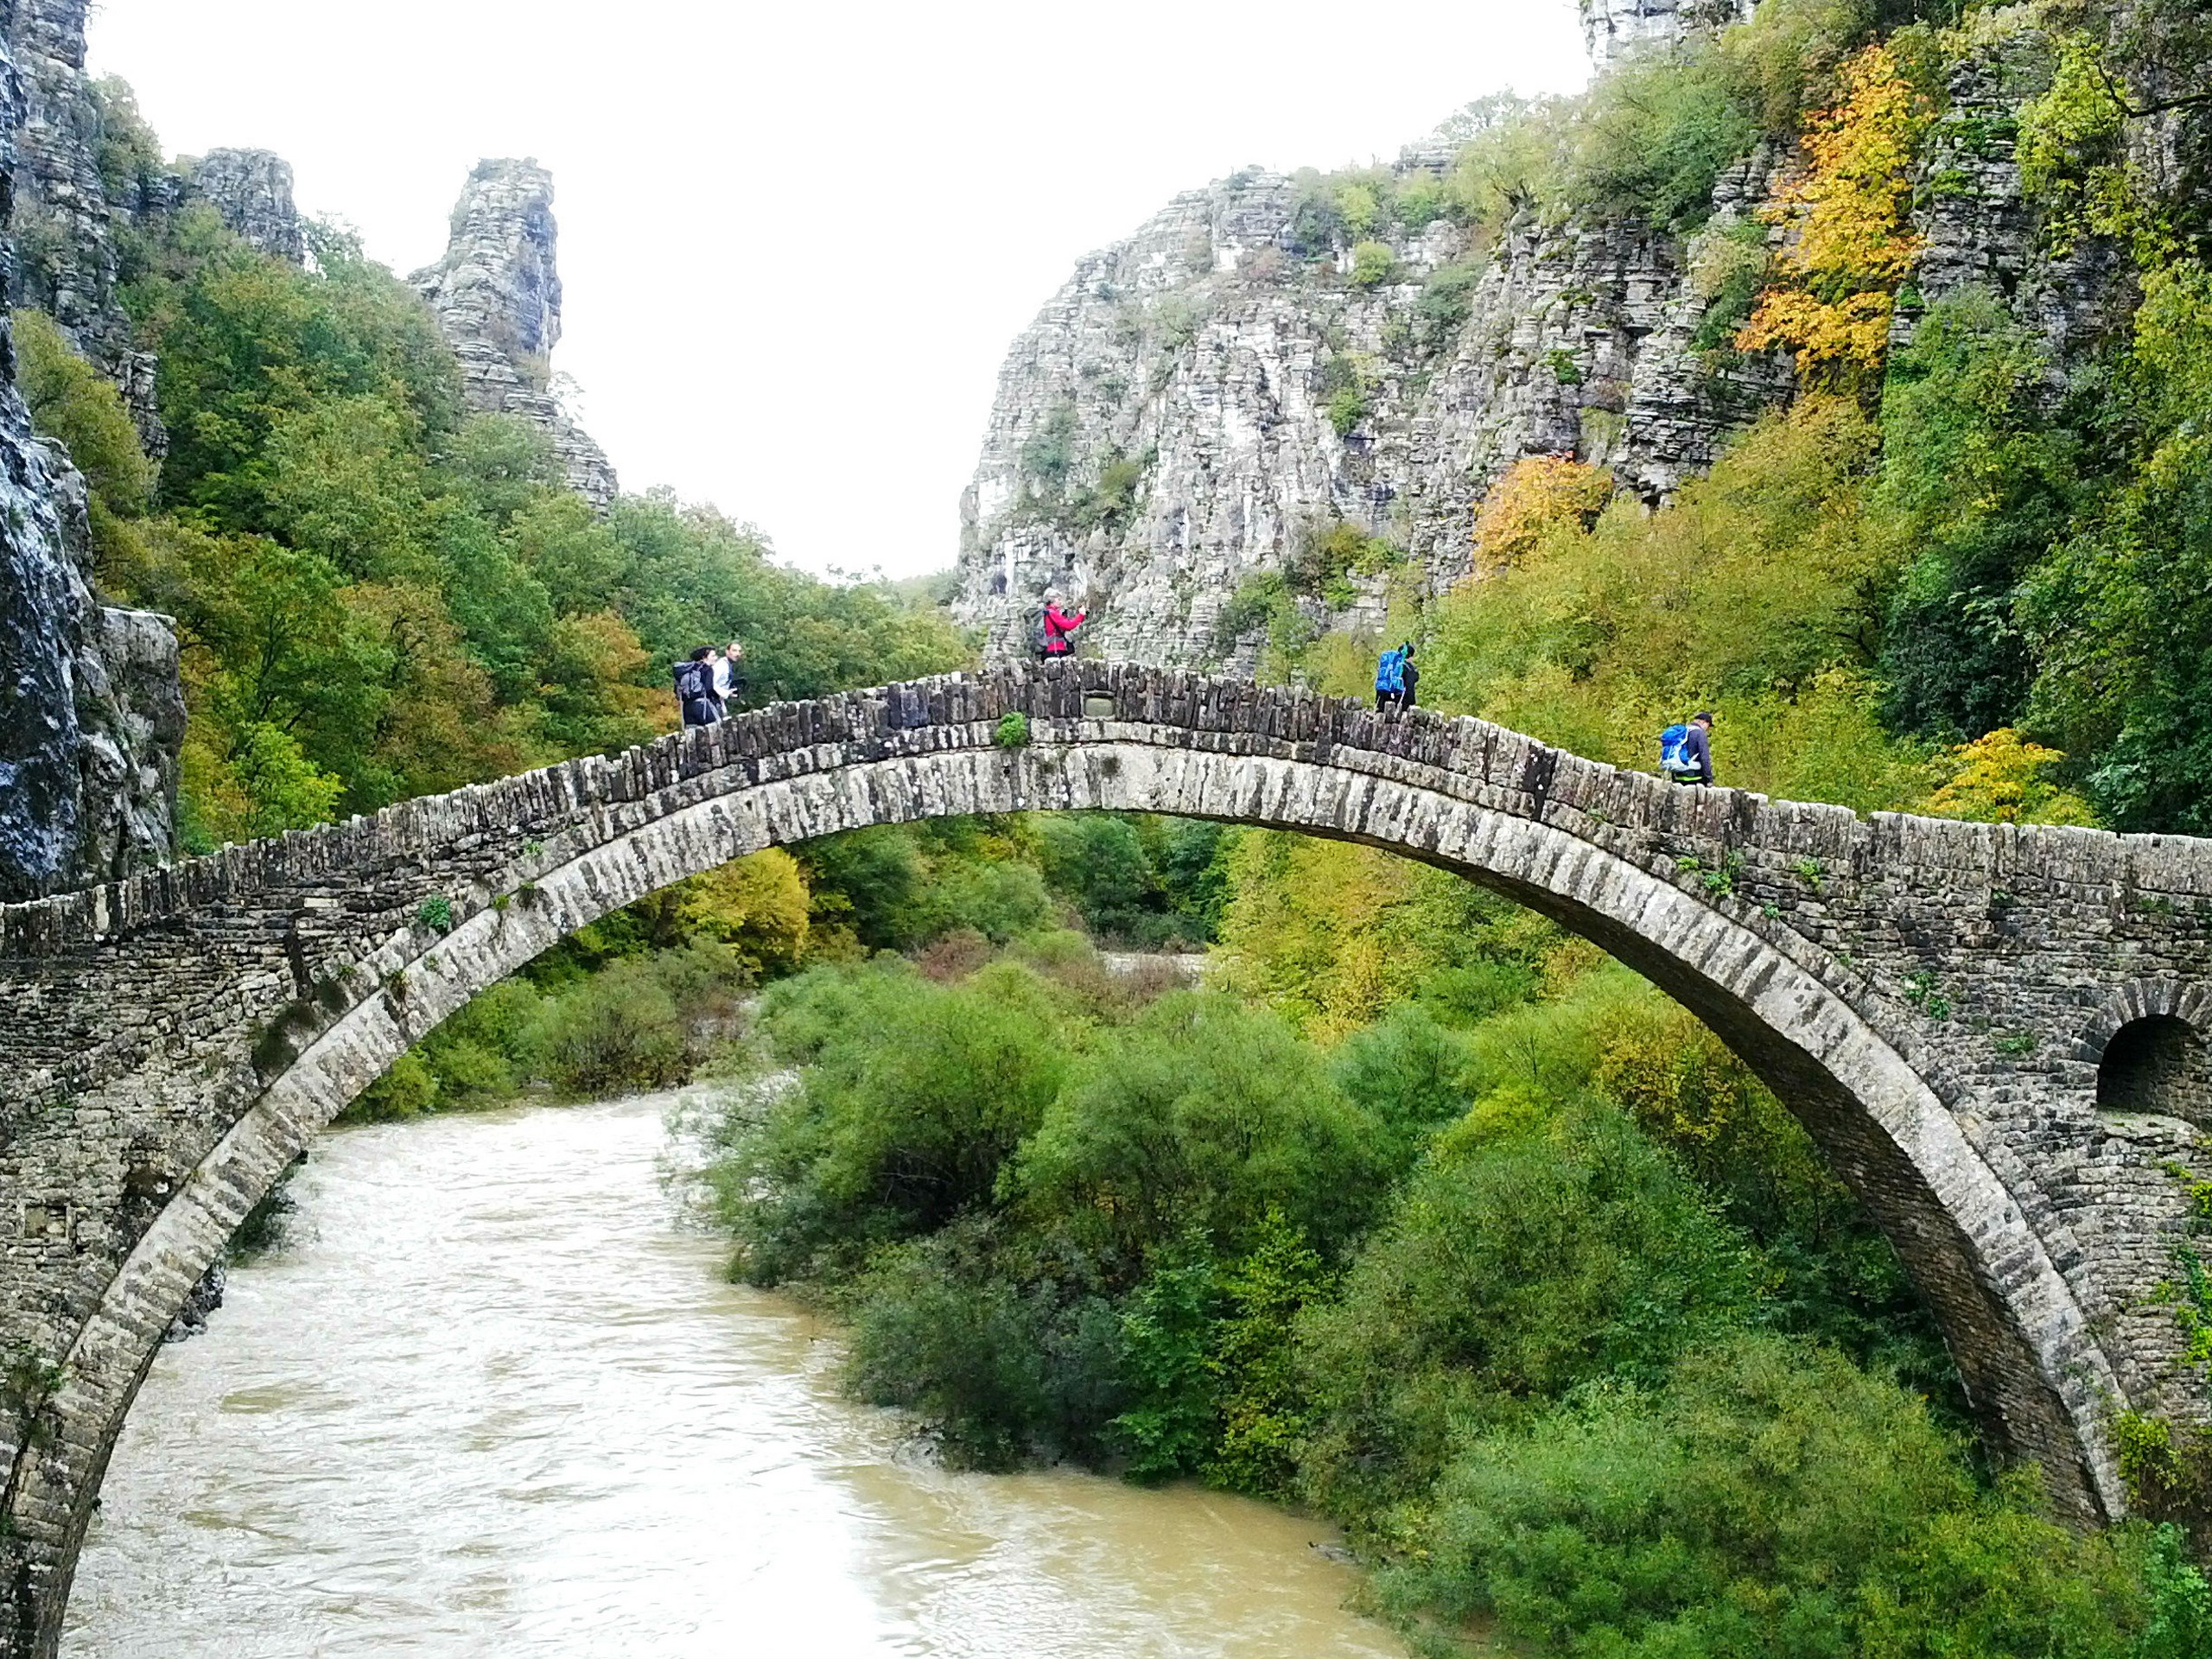 Crossing the ancient bridge in Greece, Zagori